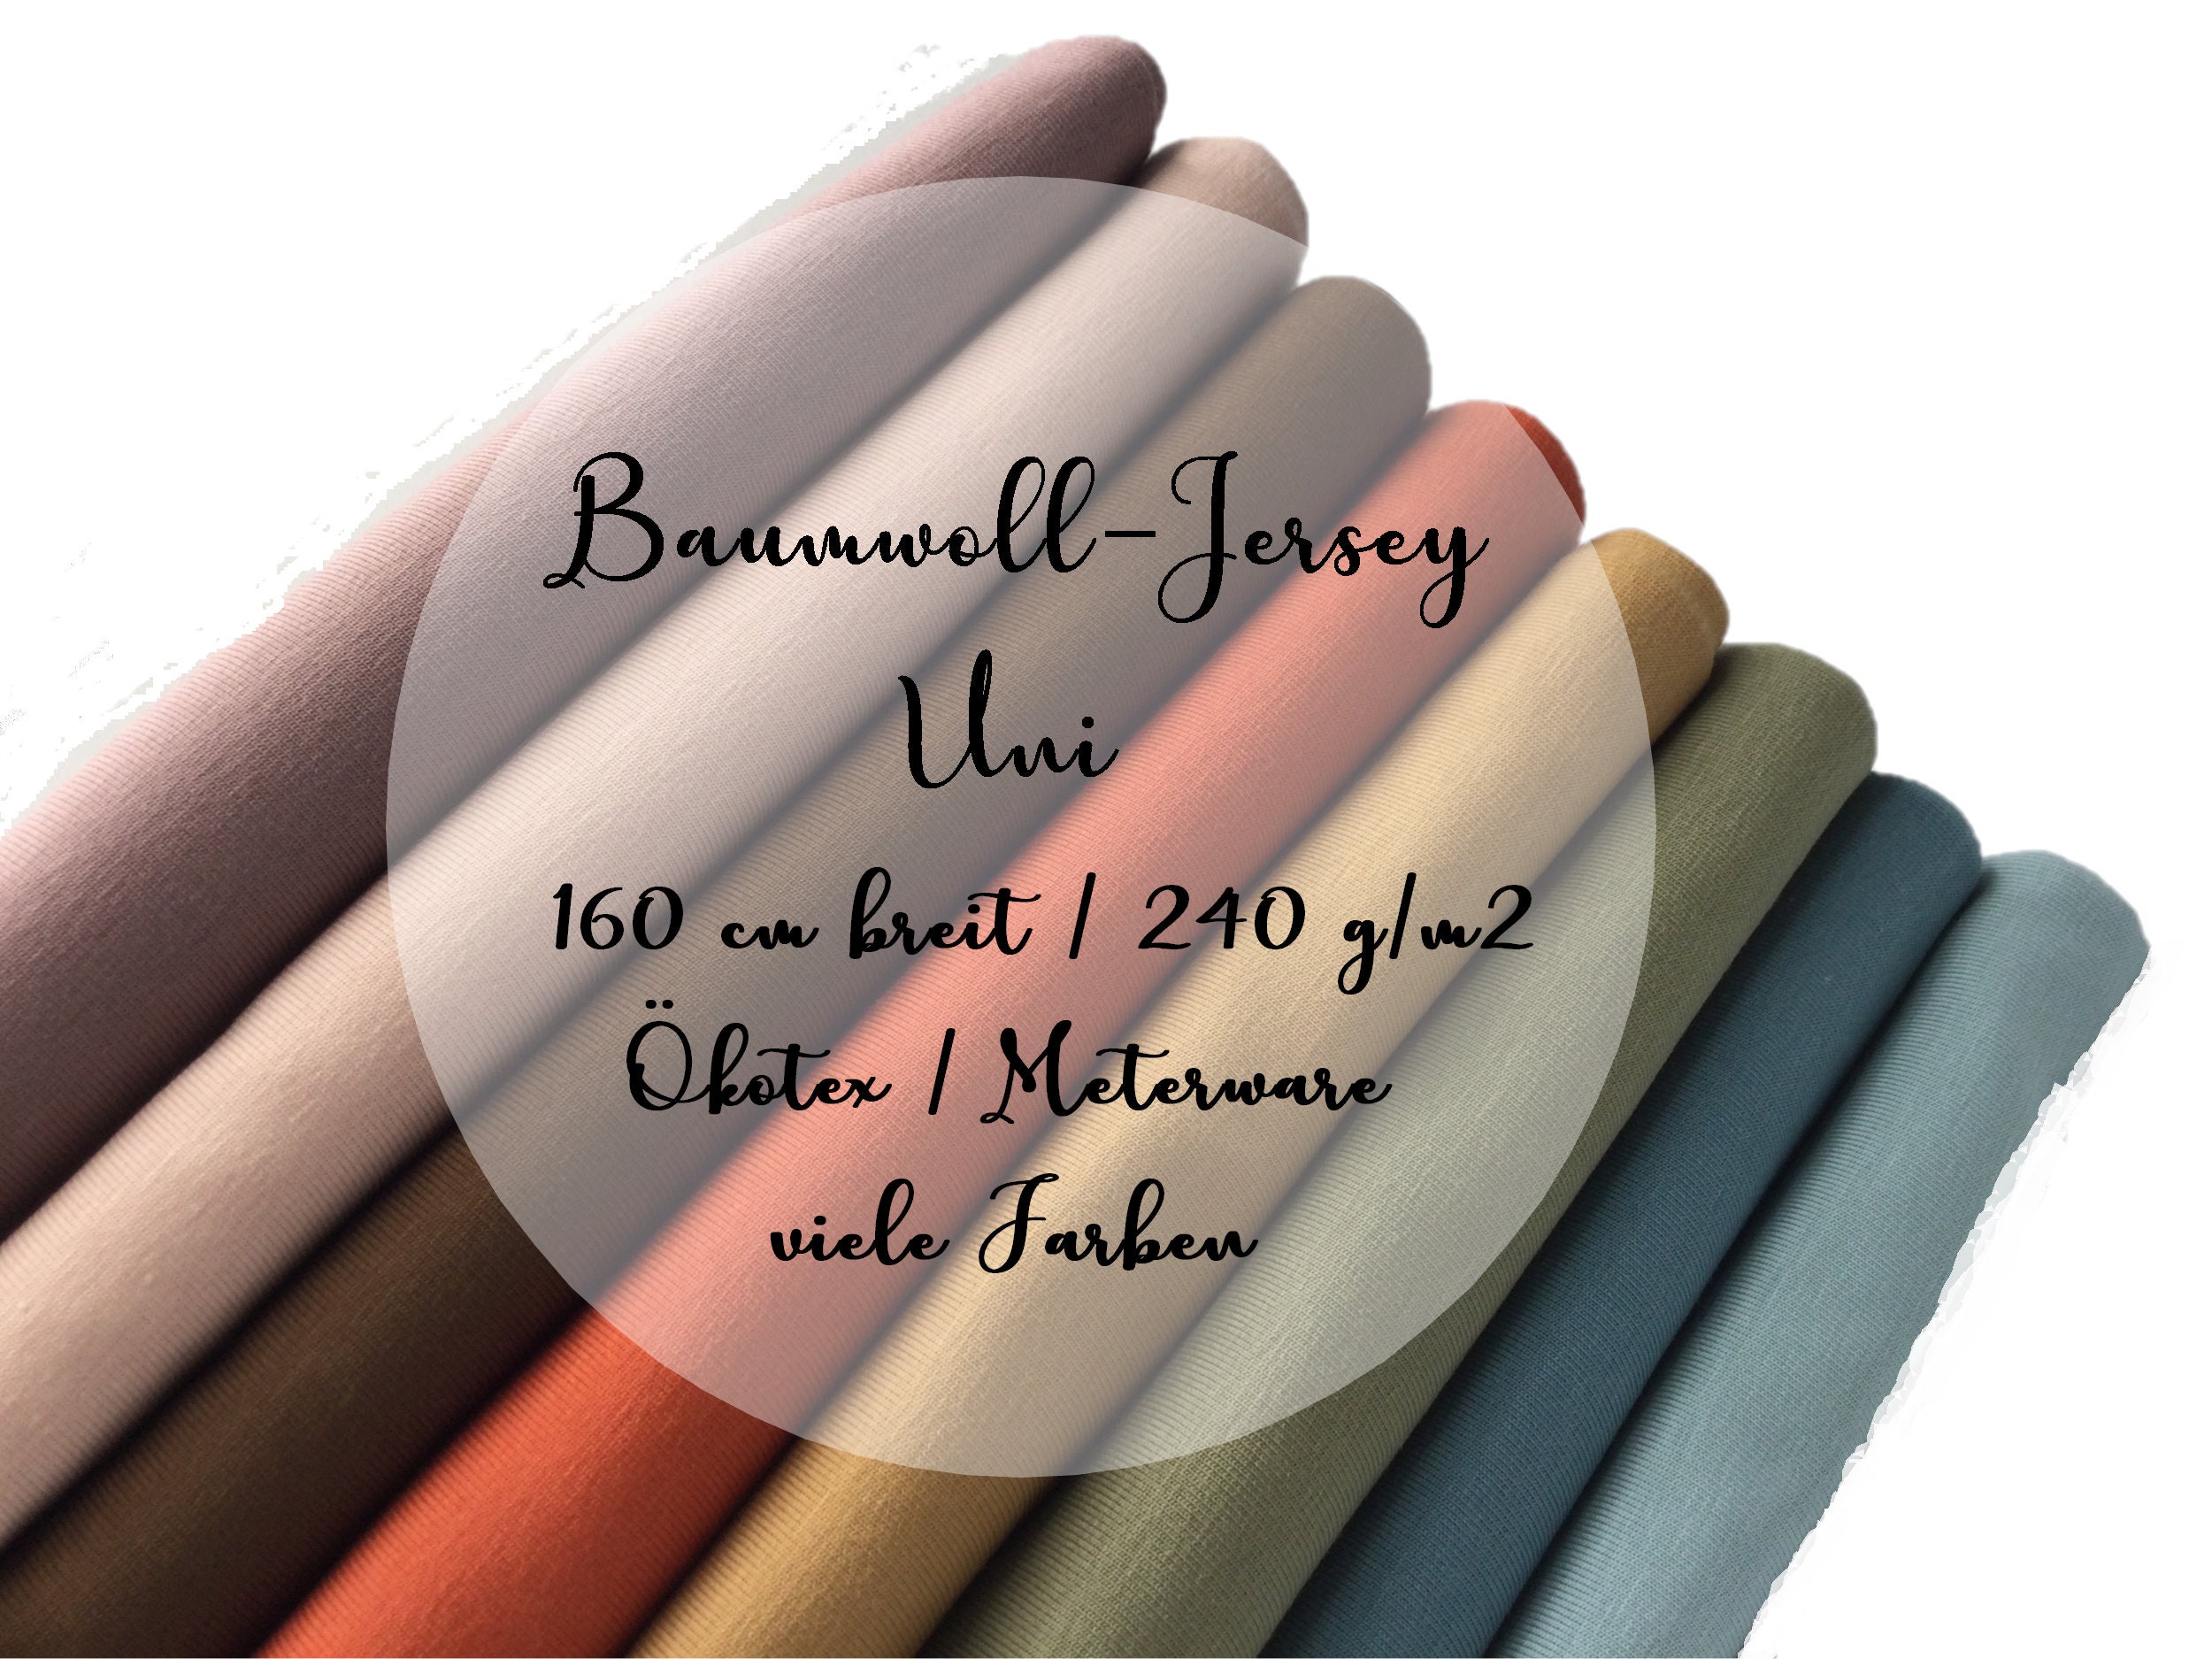 G/m2 Online 160 Buy Jersey, Uni in Etsy Cm Ökotex - Breit Baumwolljersey 240 India Viele Farben